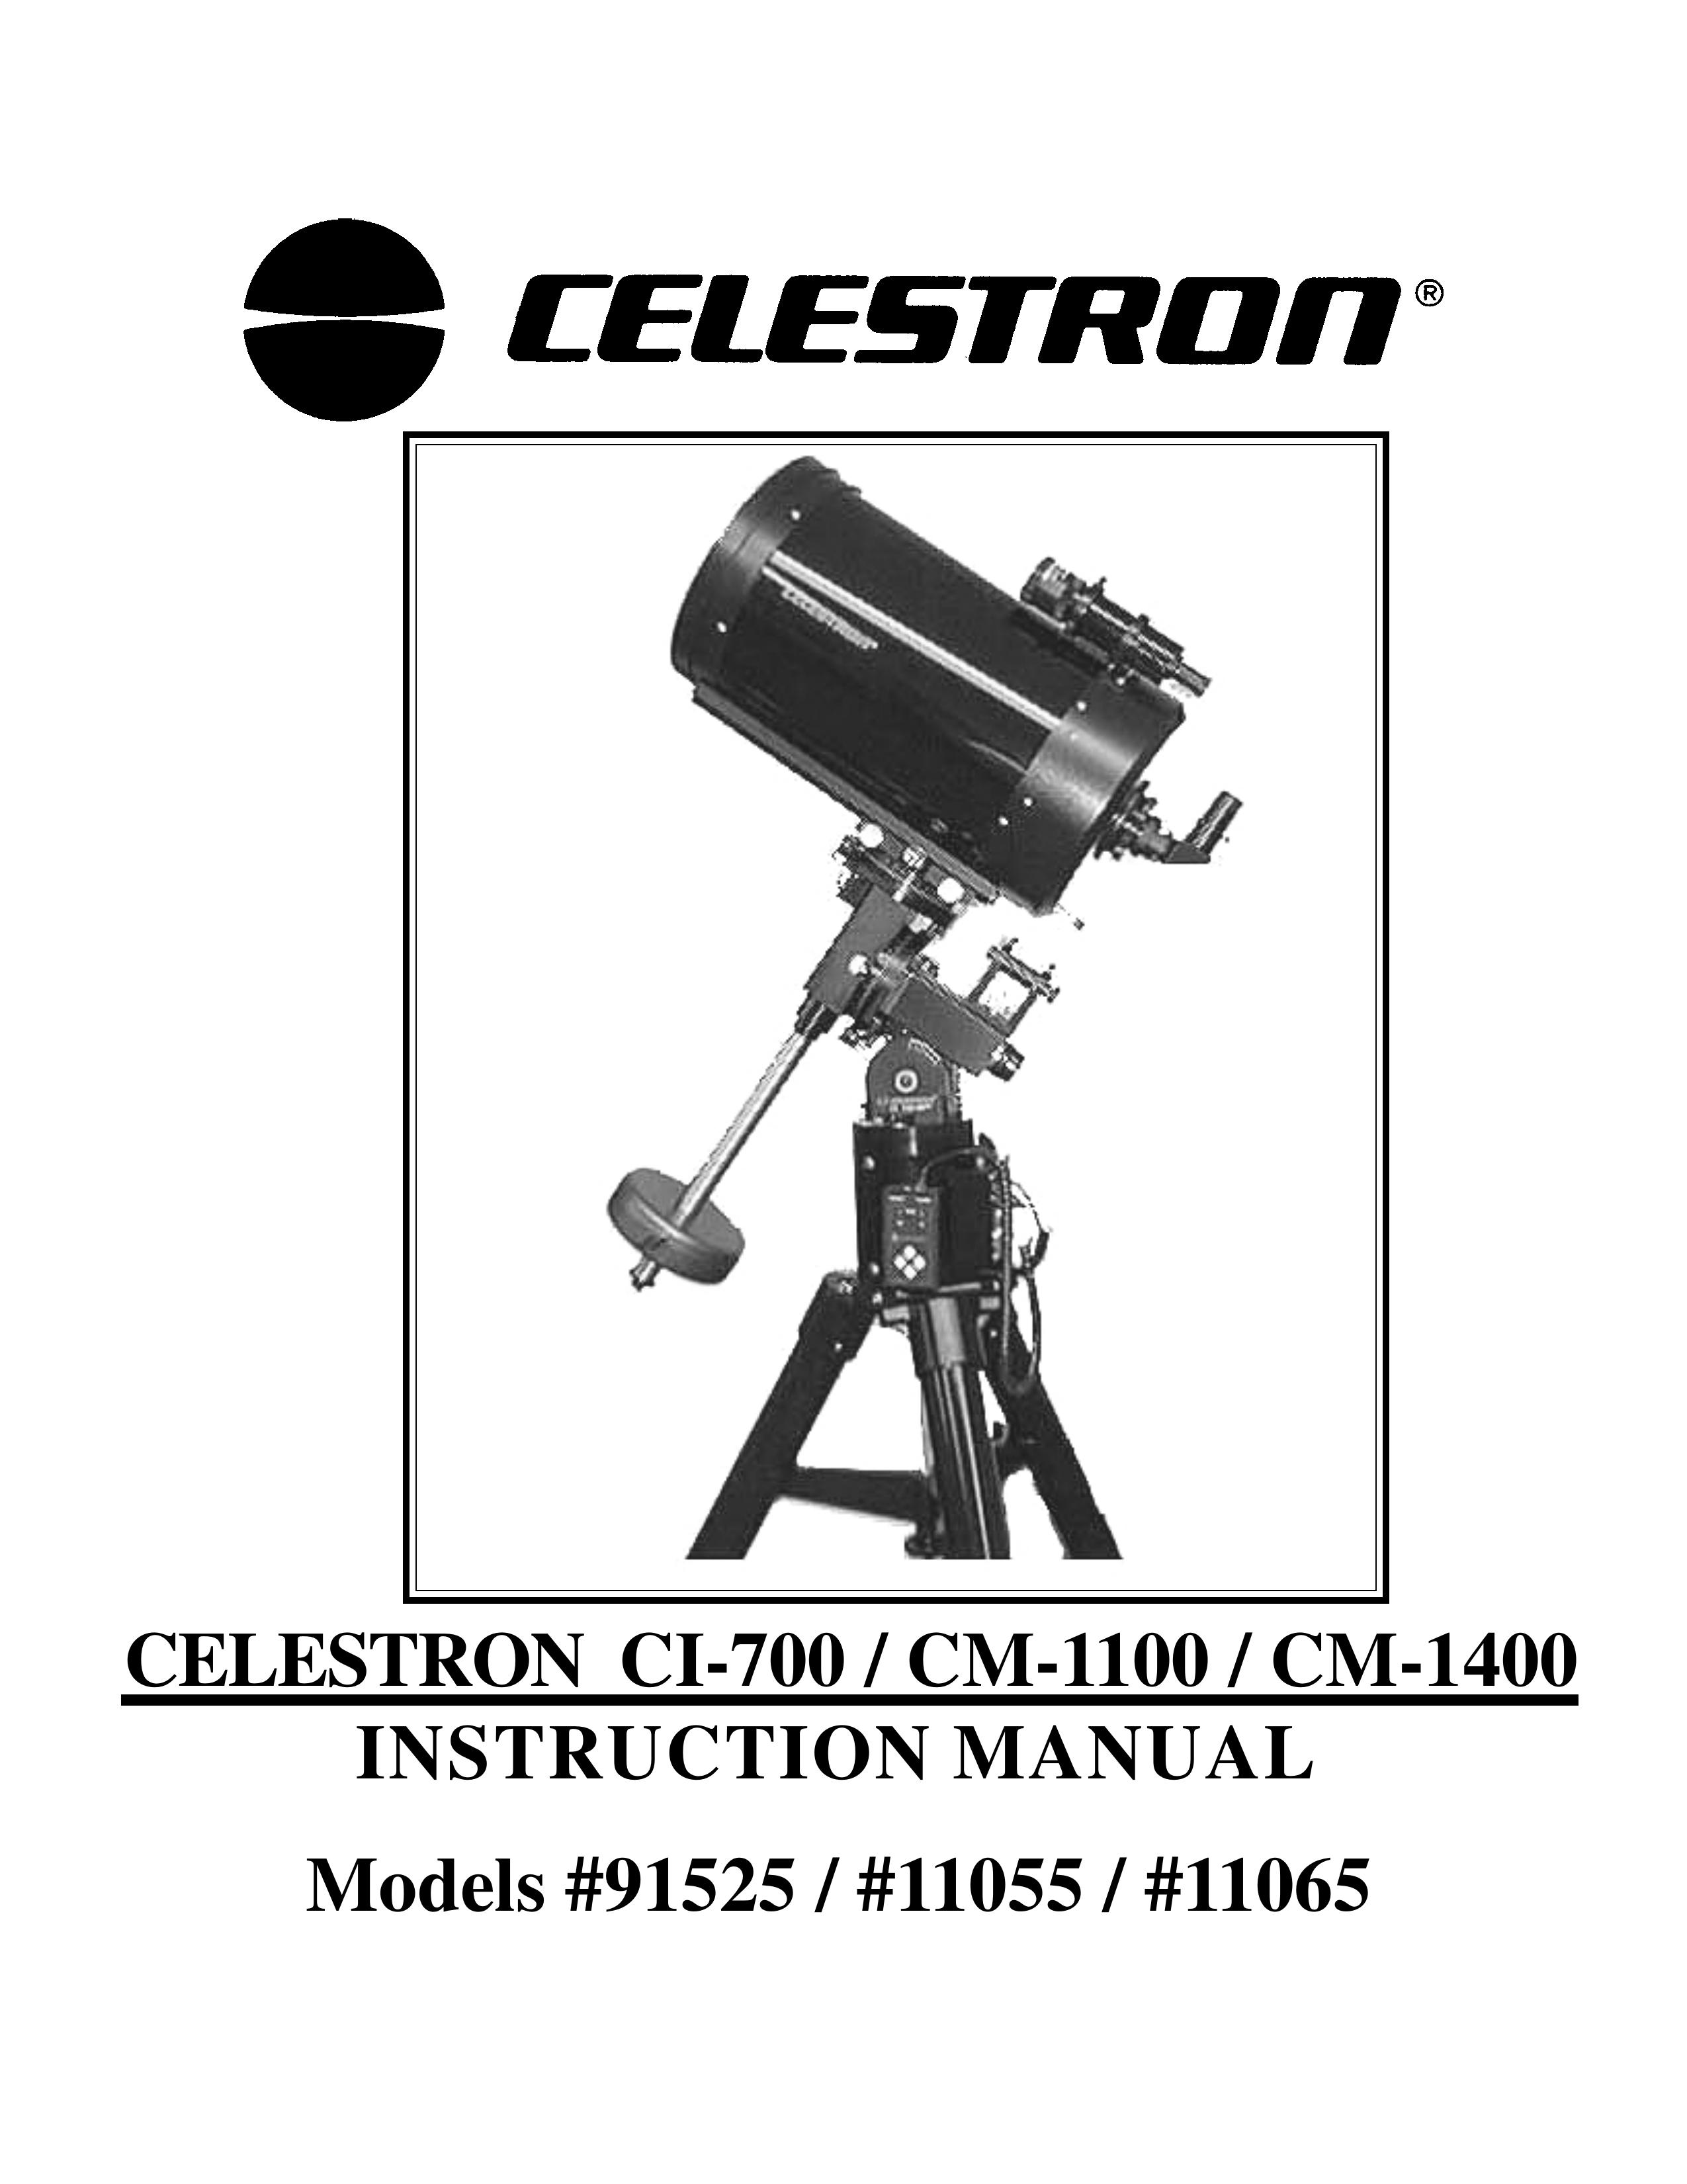 Celestron 11055 Telescope User Manual